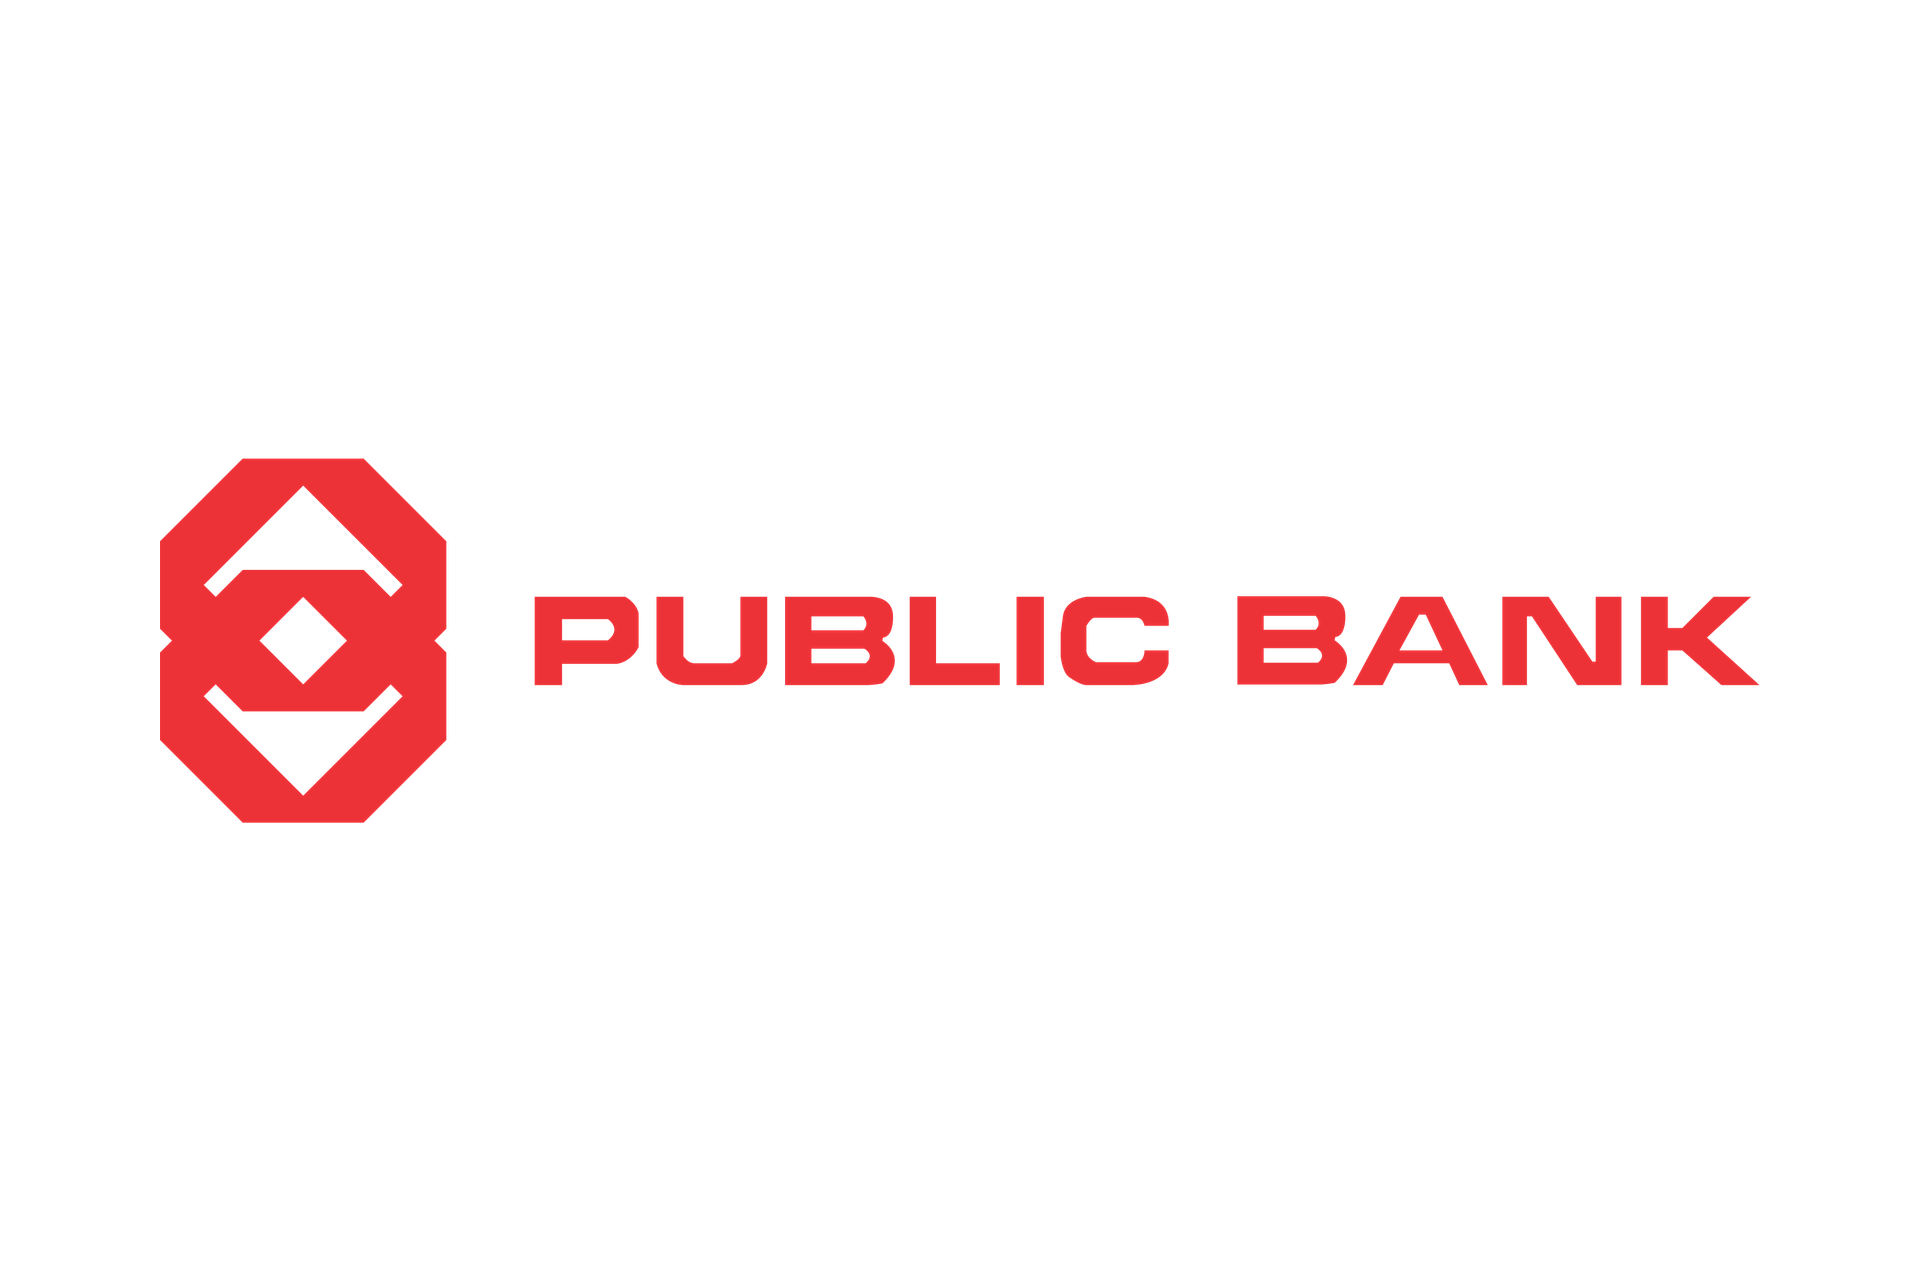 Pbe online banking login